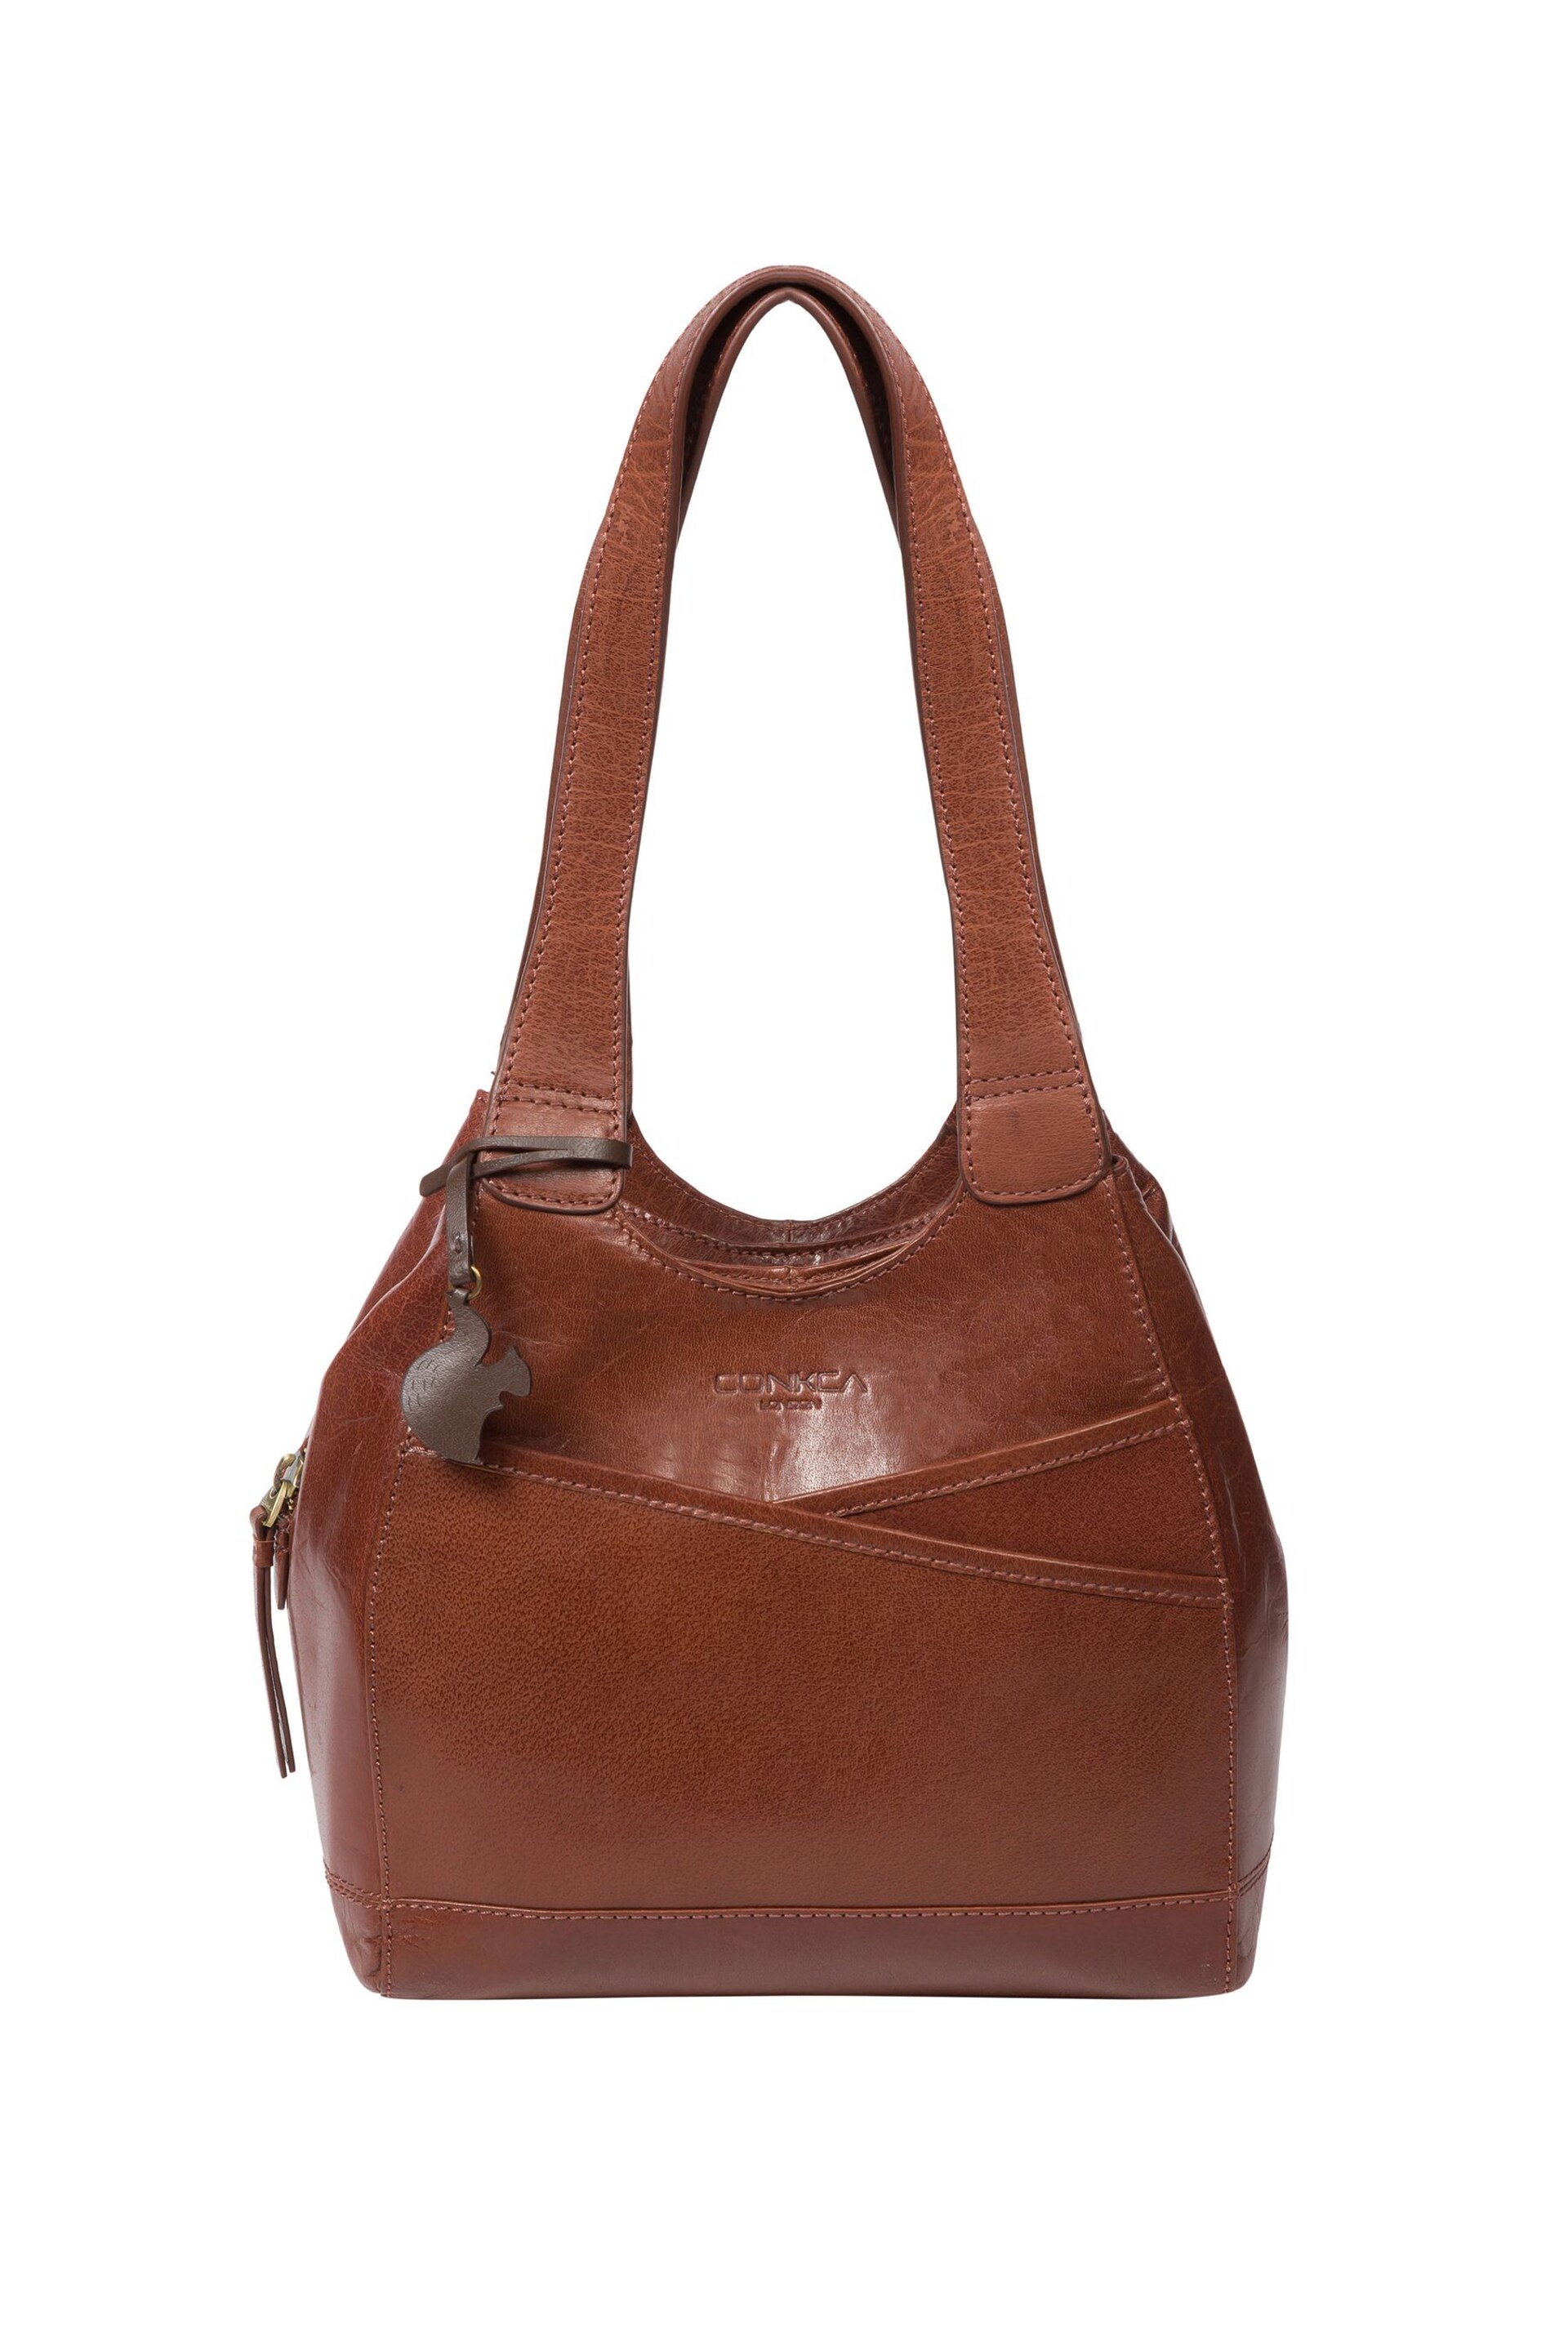 Conkca Juliet Handbag - Image 2 of 6